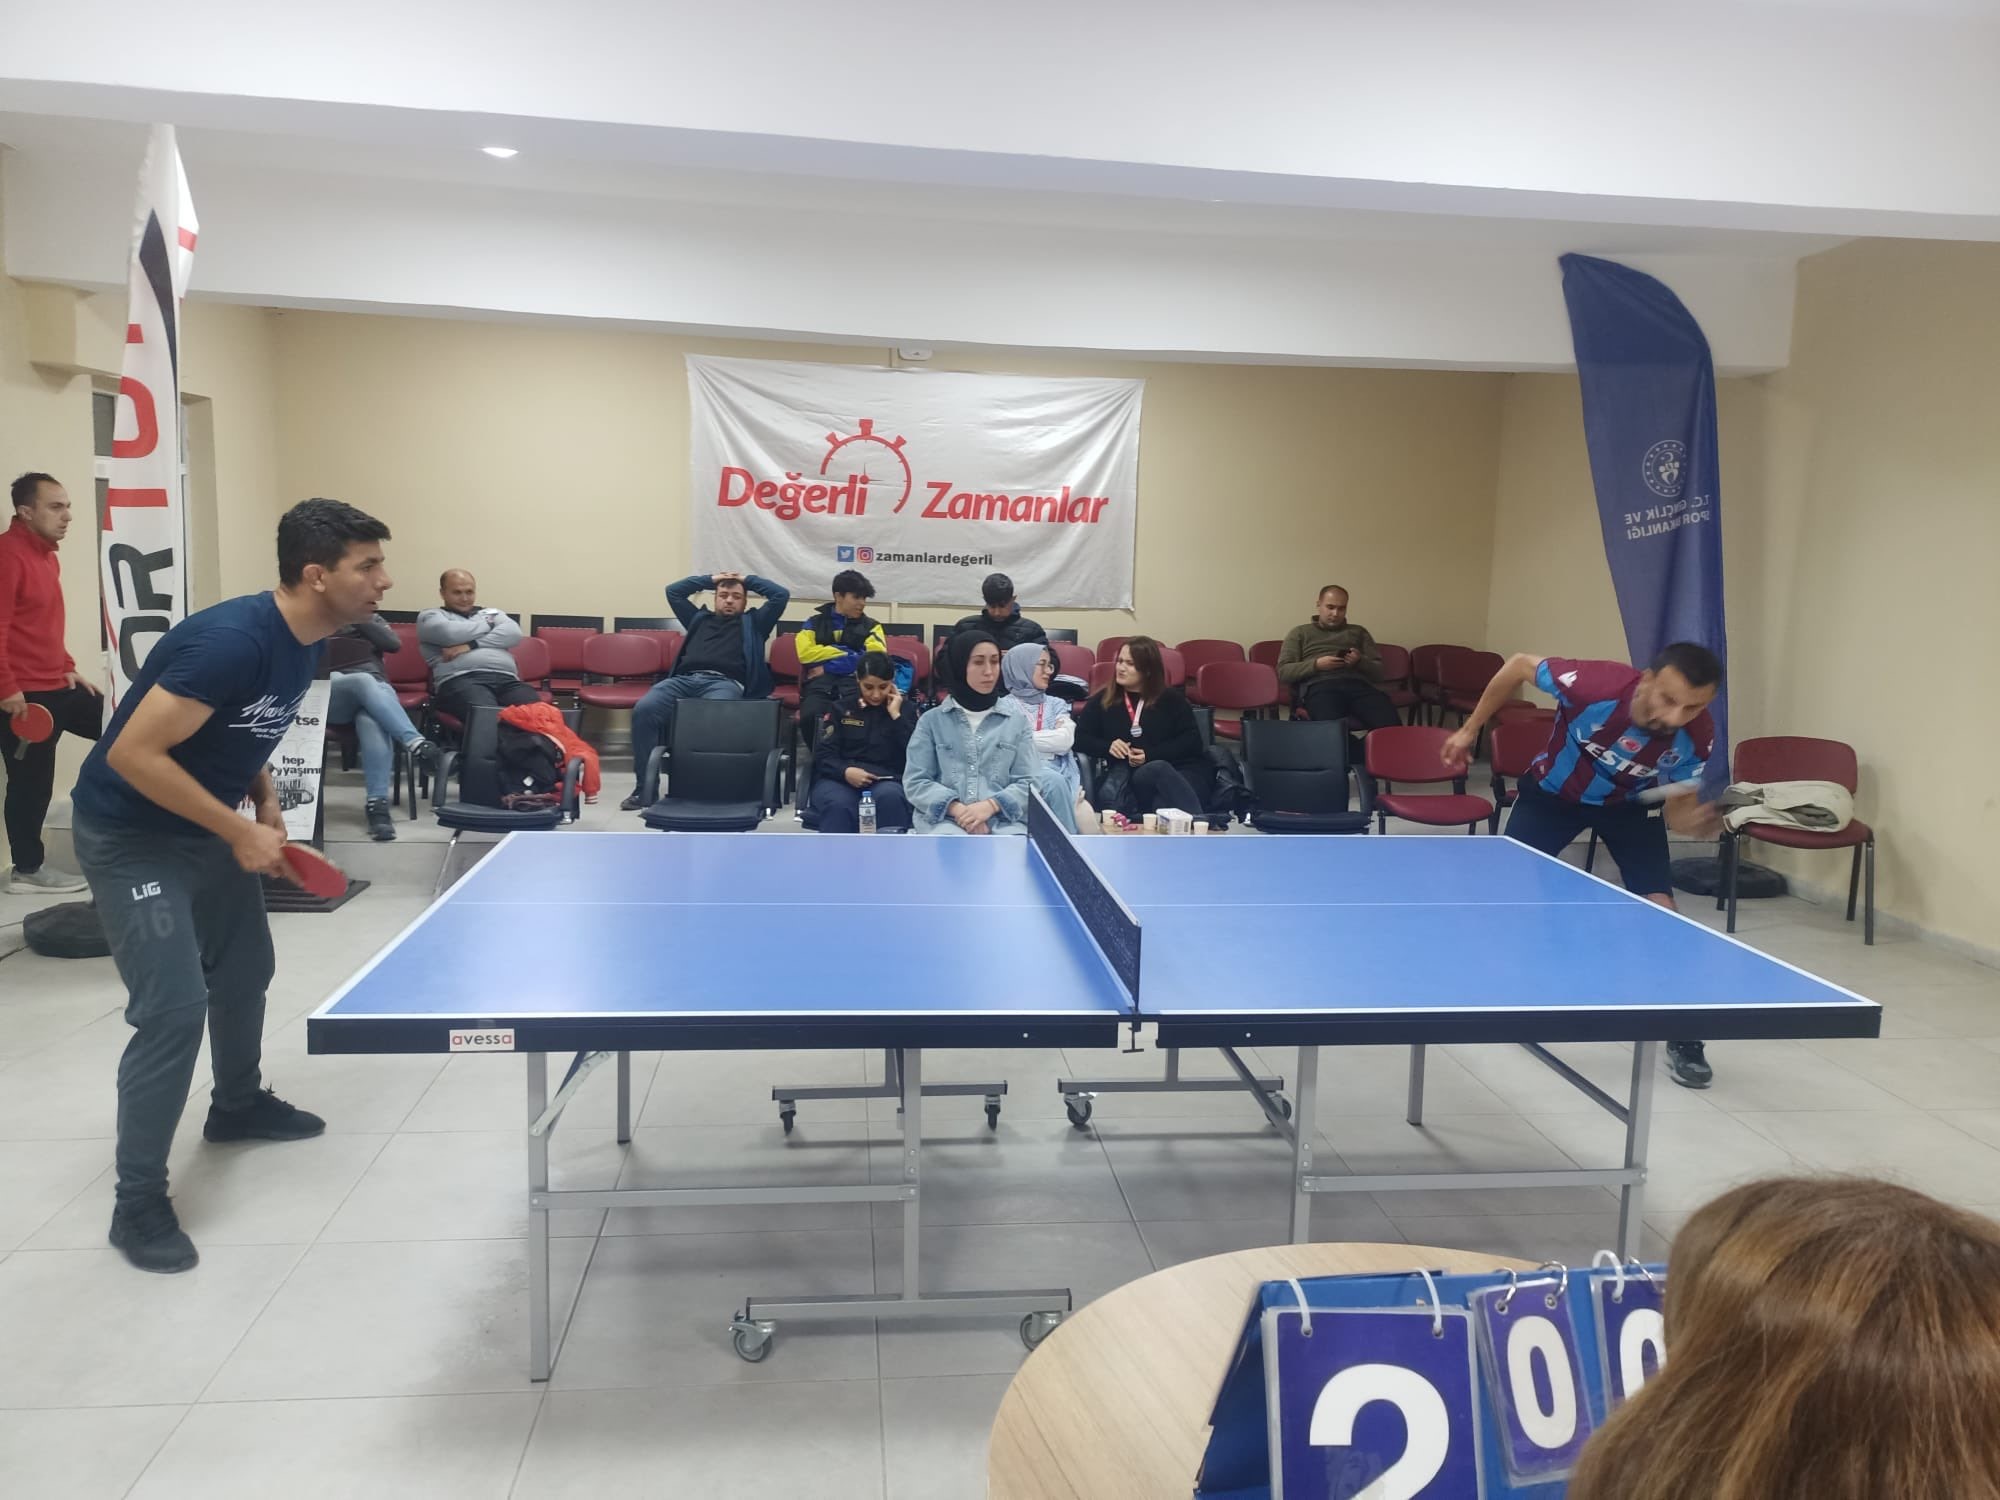 Ağrı'nın Hamur ilçesinde 24 Kasım Öğretmenler Günü dolayısıyla masa tenisi ve satranç turnuvaları düzenlendi.